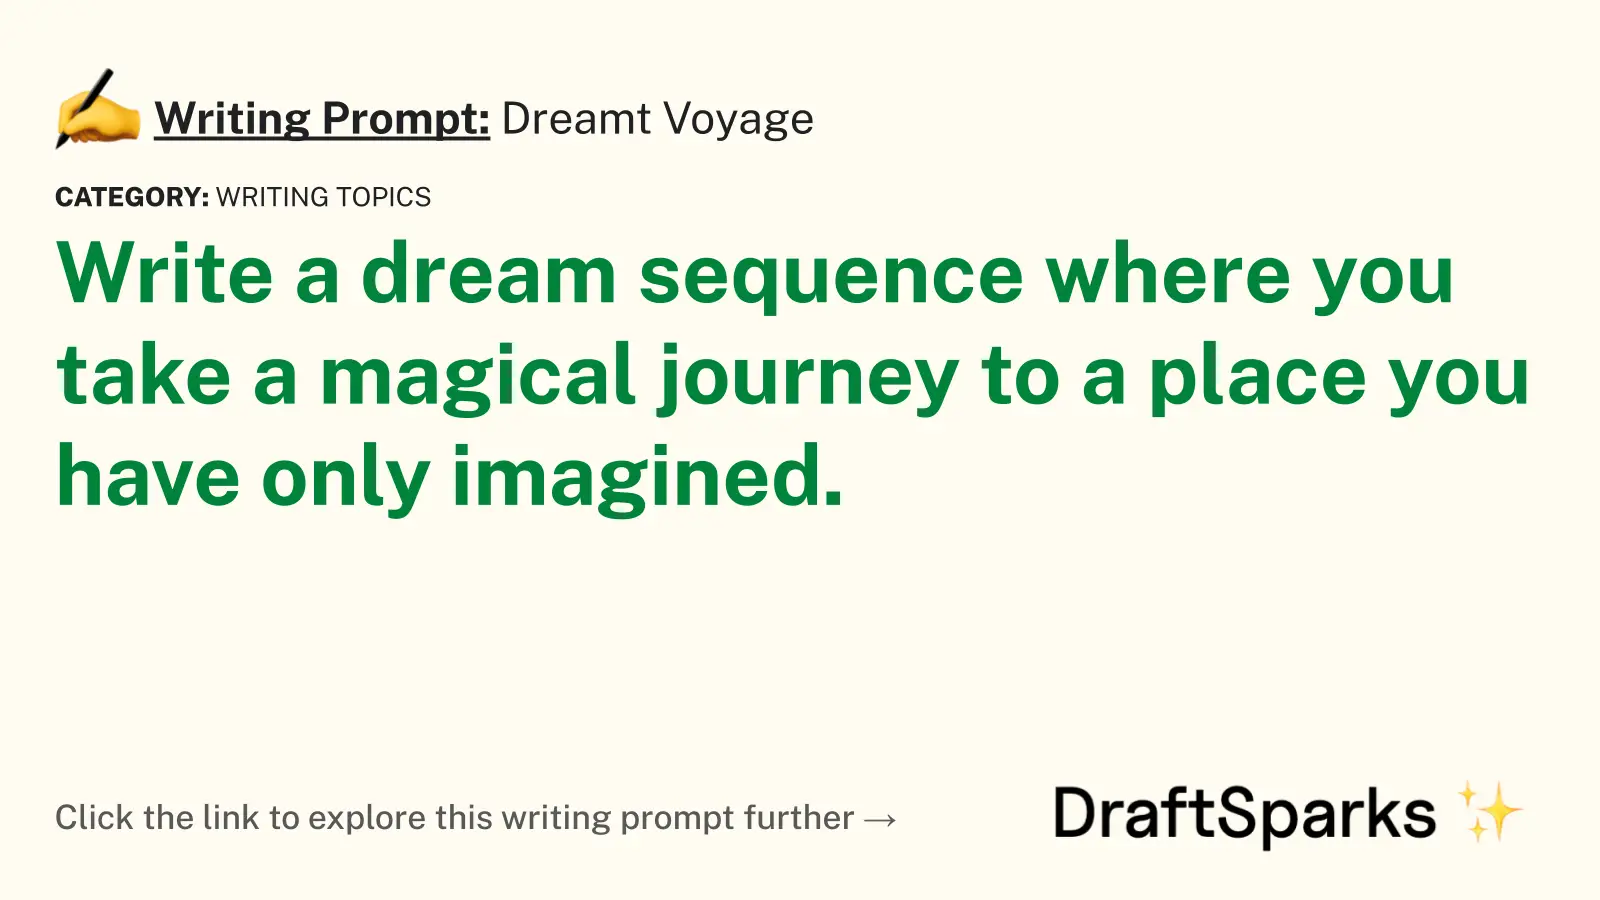 Dreamt Voyage